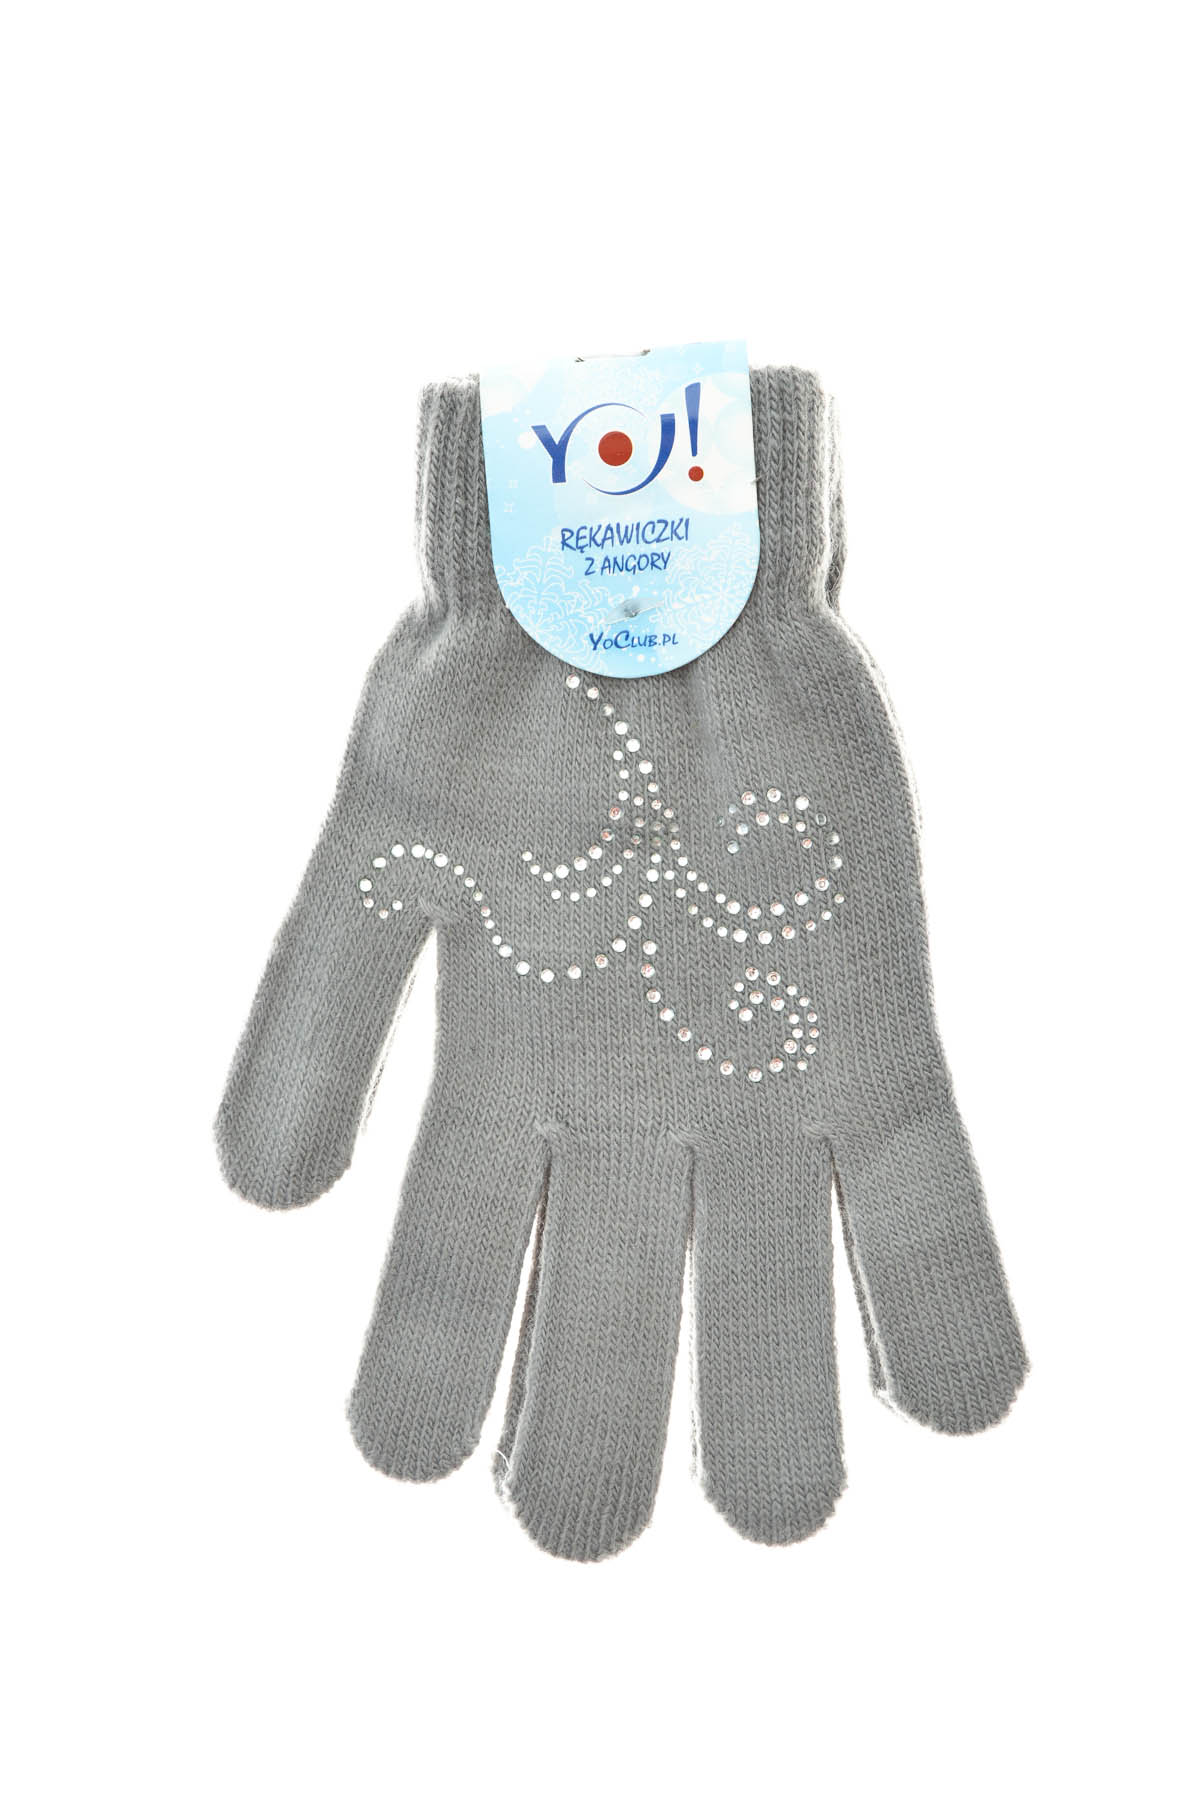 Kids' Gloves -Yo! CLub - 2